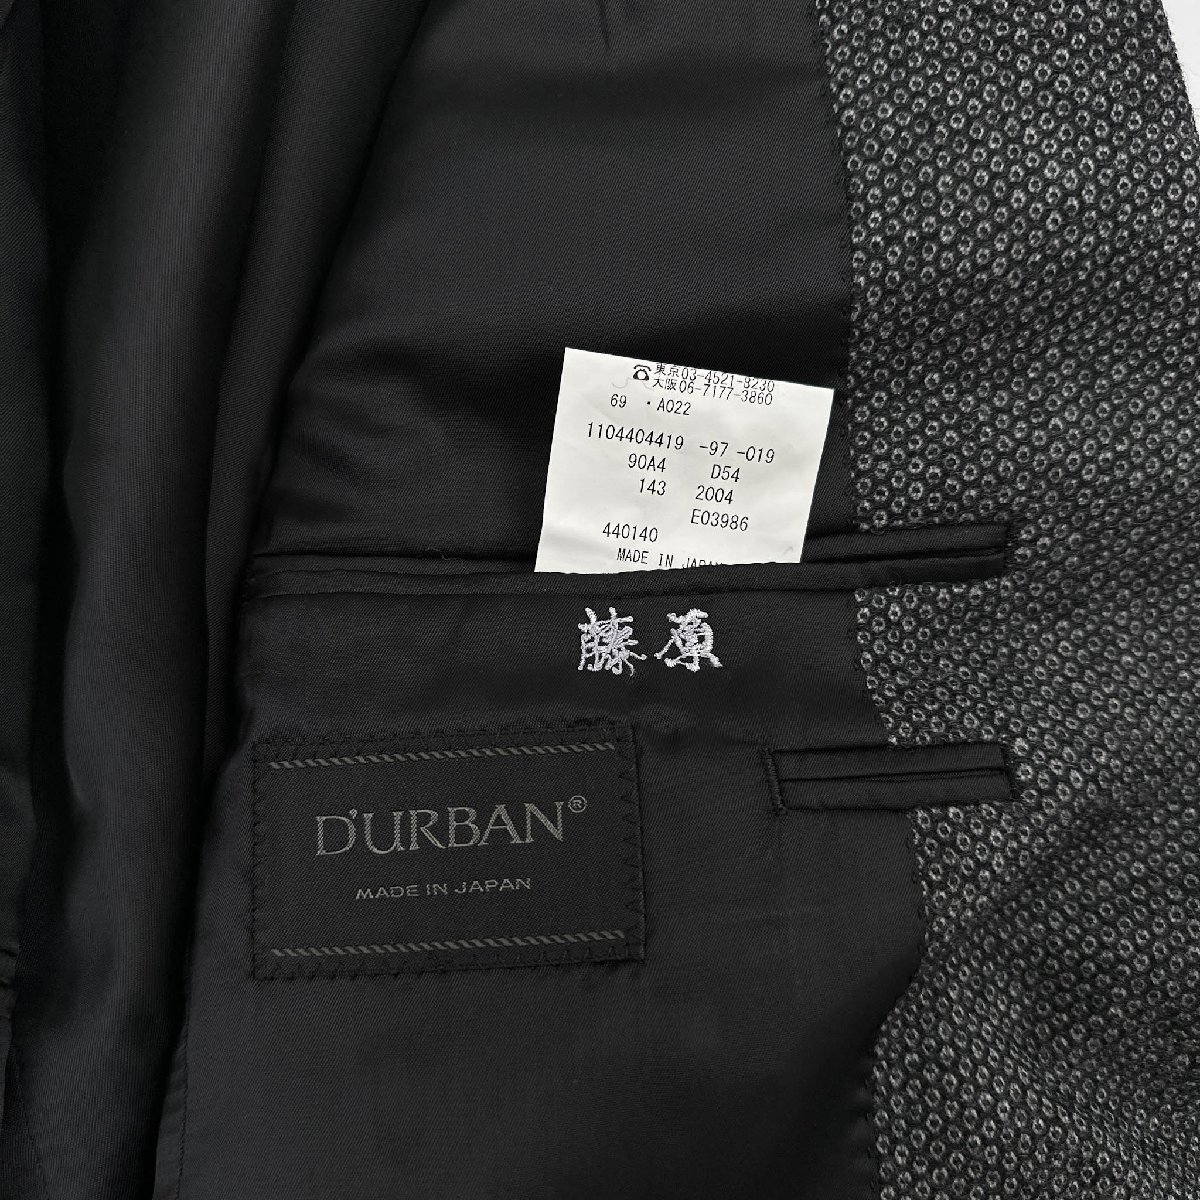 D'URBAN ダーバン 総柄 2B ウール テーラードジャケット サイズ90A4/ブラック グレー系/メンズ 紳士 日本製 レナウン_画像5